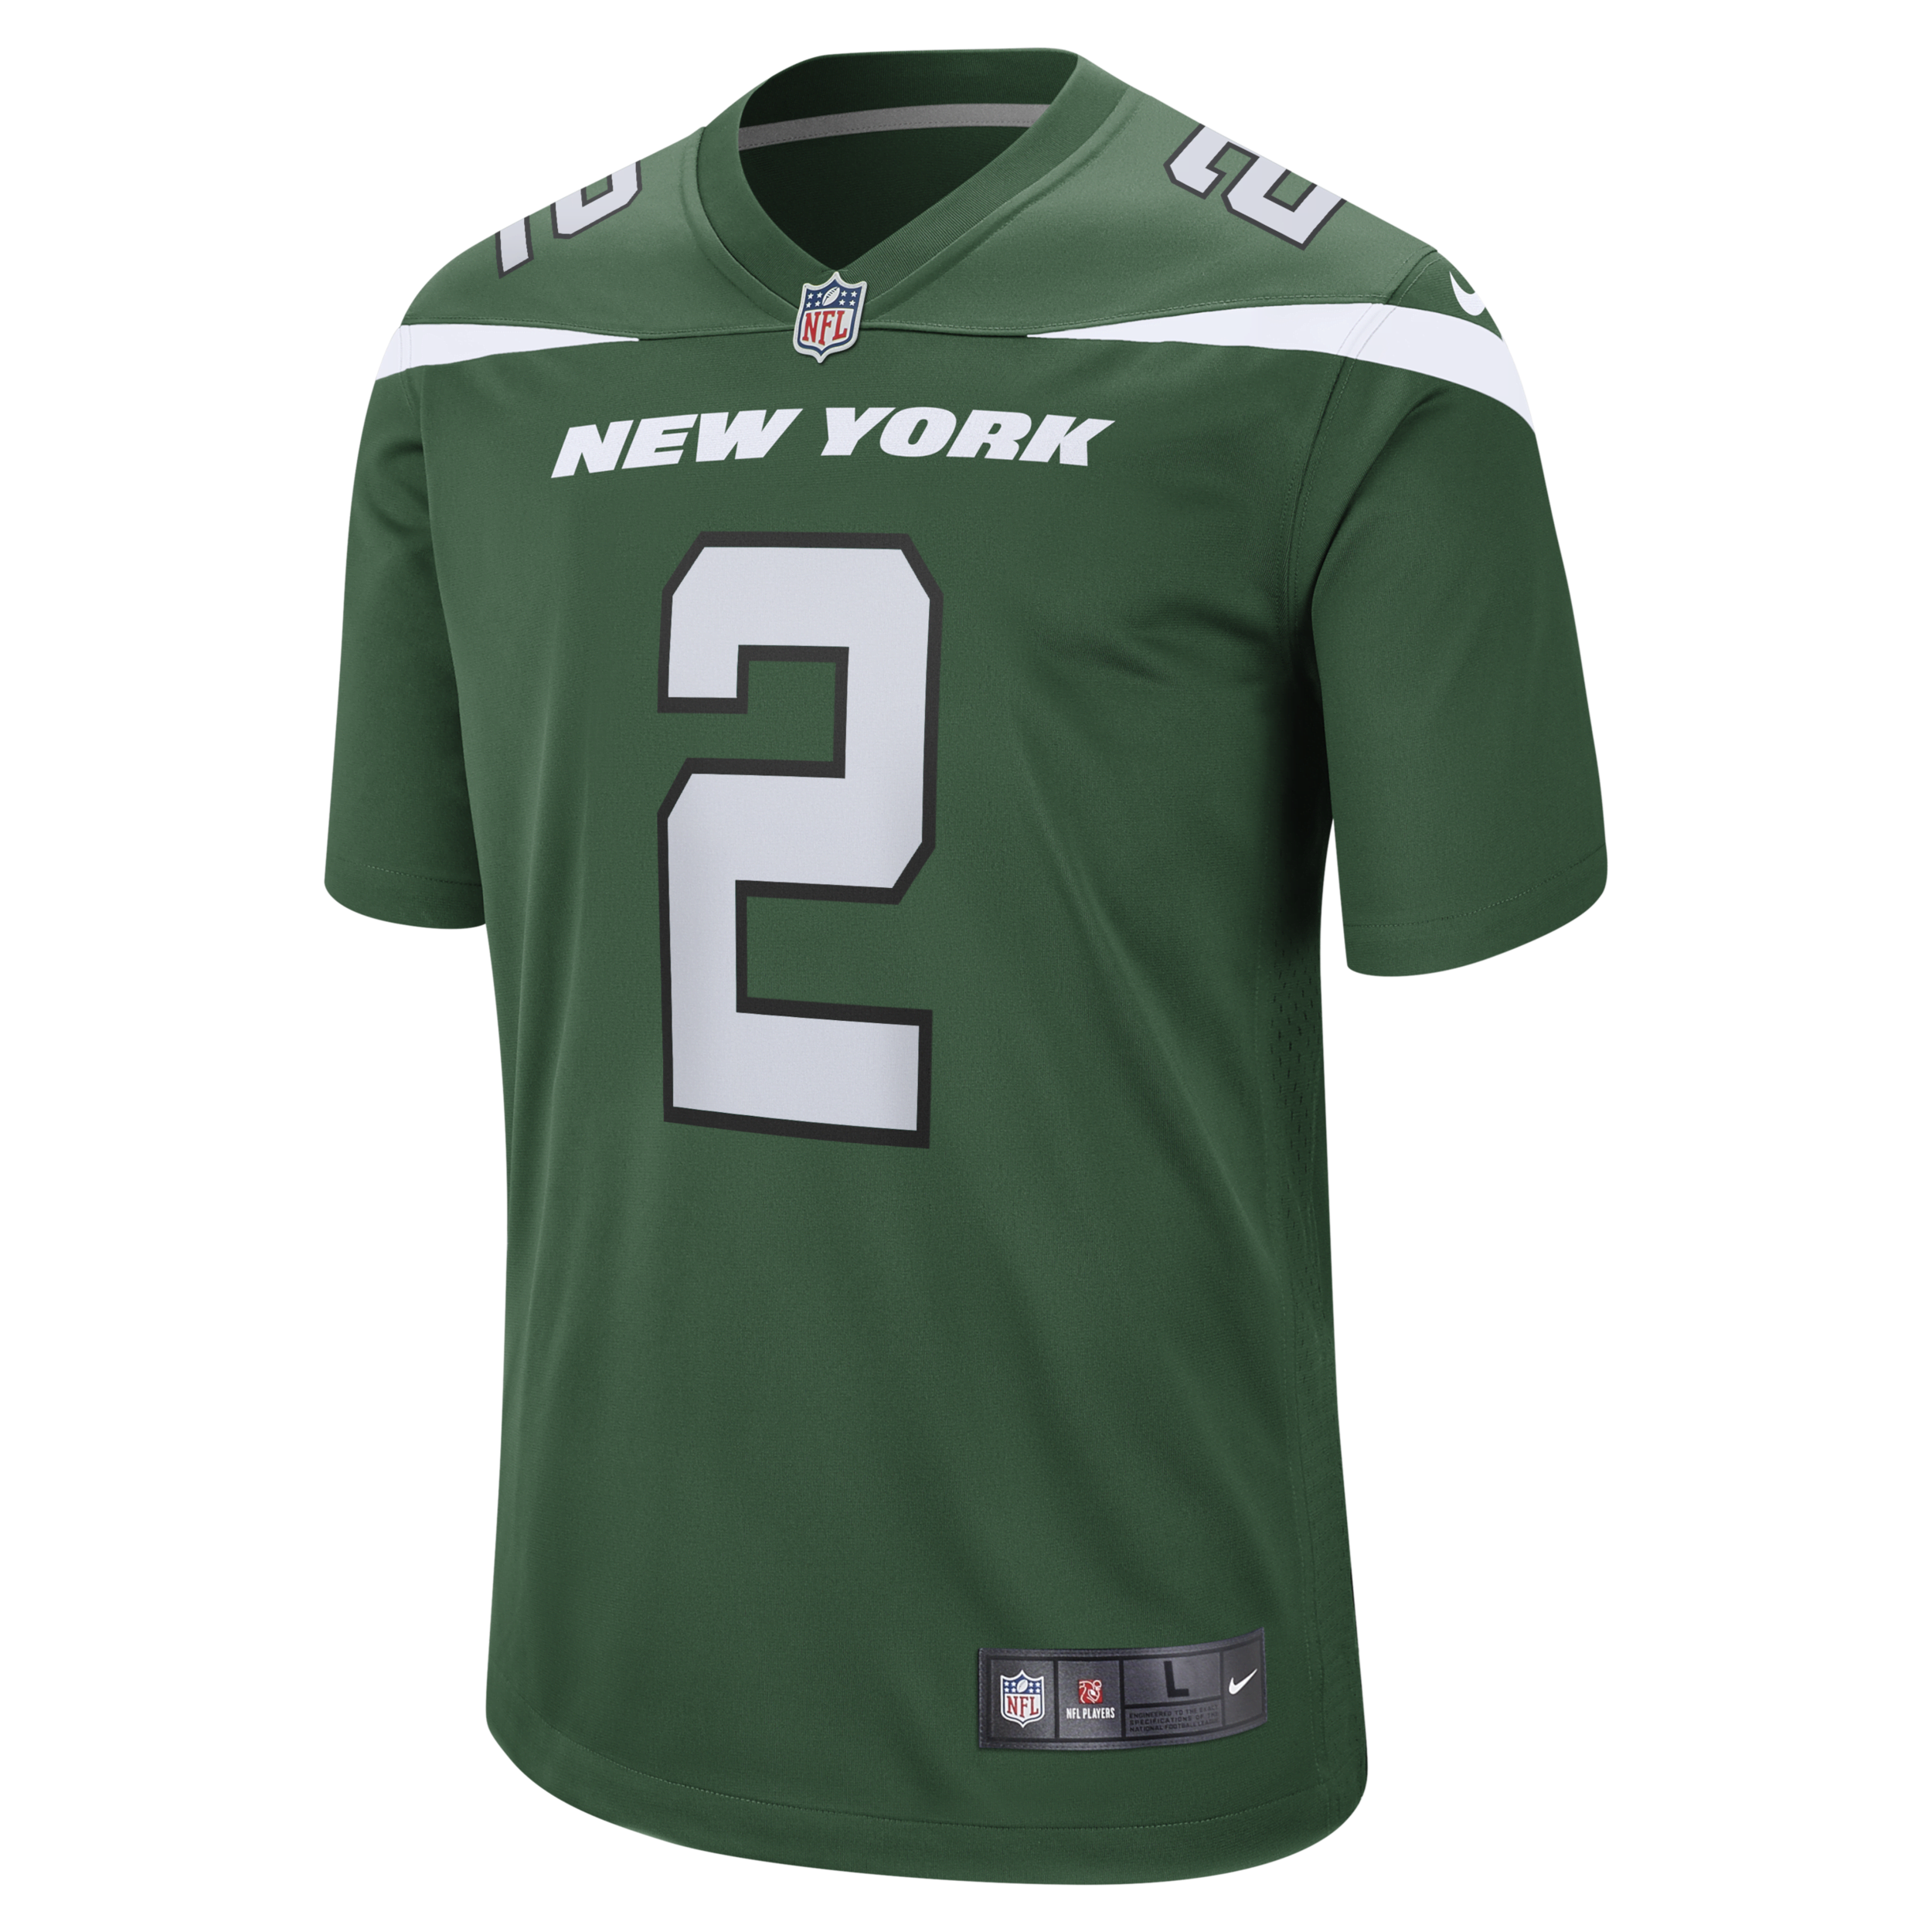 Ανδρική φανέλα αμερικανικού ποδοσφαίρου NFL New York Jets (Zach Wilson) - Πράσινο